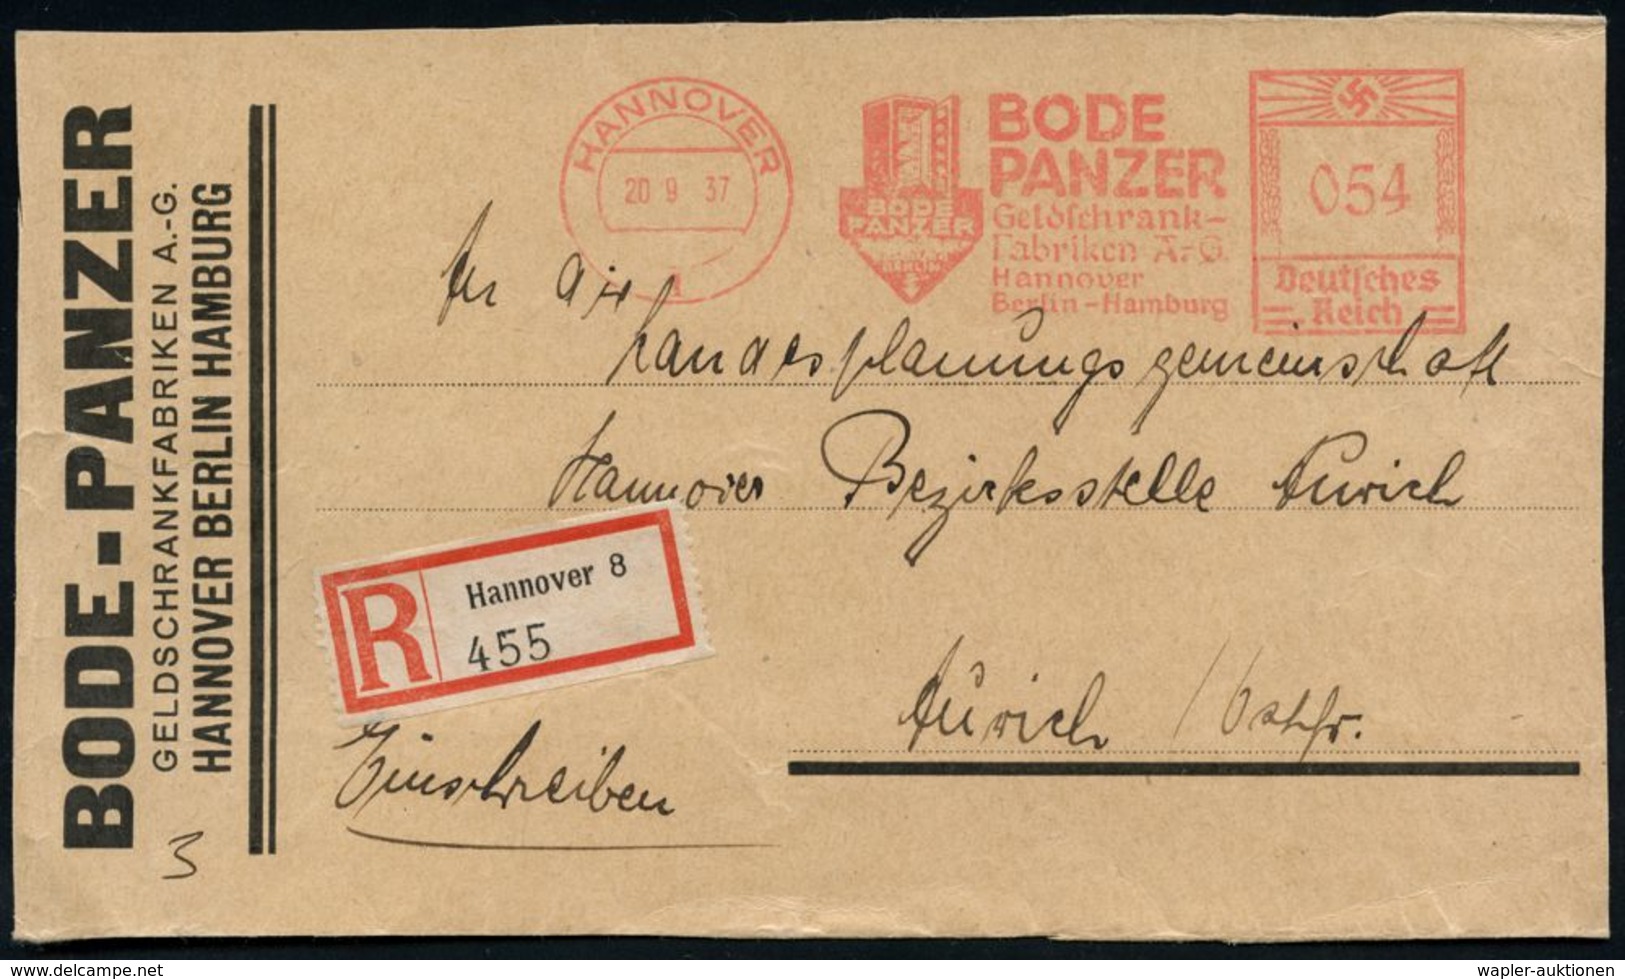 NUMISPHILATELIE / GELDSCHEINE / MÜNZEN : HANNOVER/ 1/ BODE/ PANZER/ Geldschrank-/ Fabriken AG.. 1937 (20.9.) AFS 054 Pf. - Non Classificati